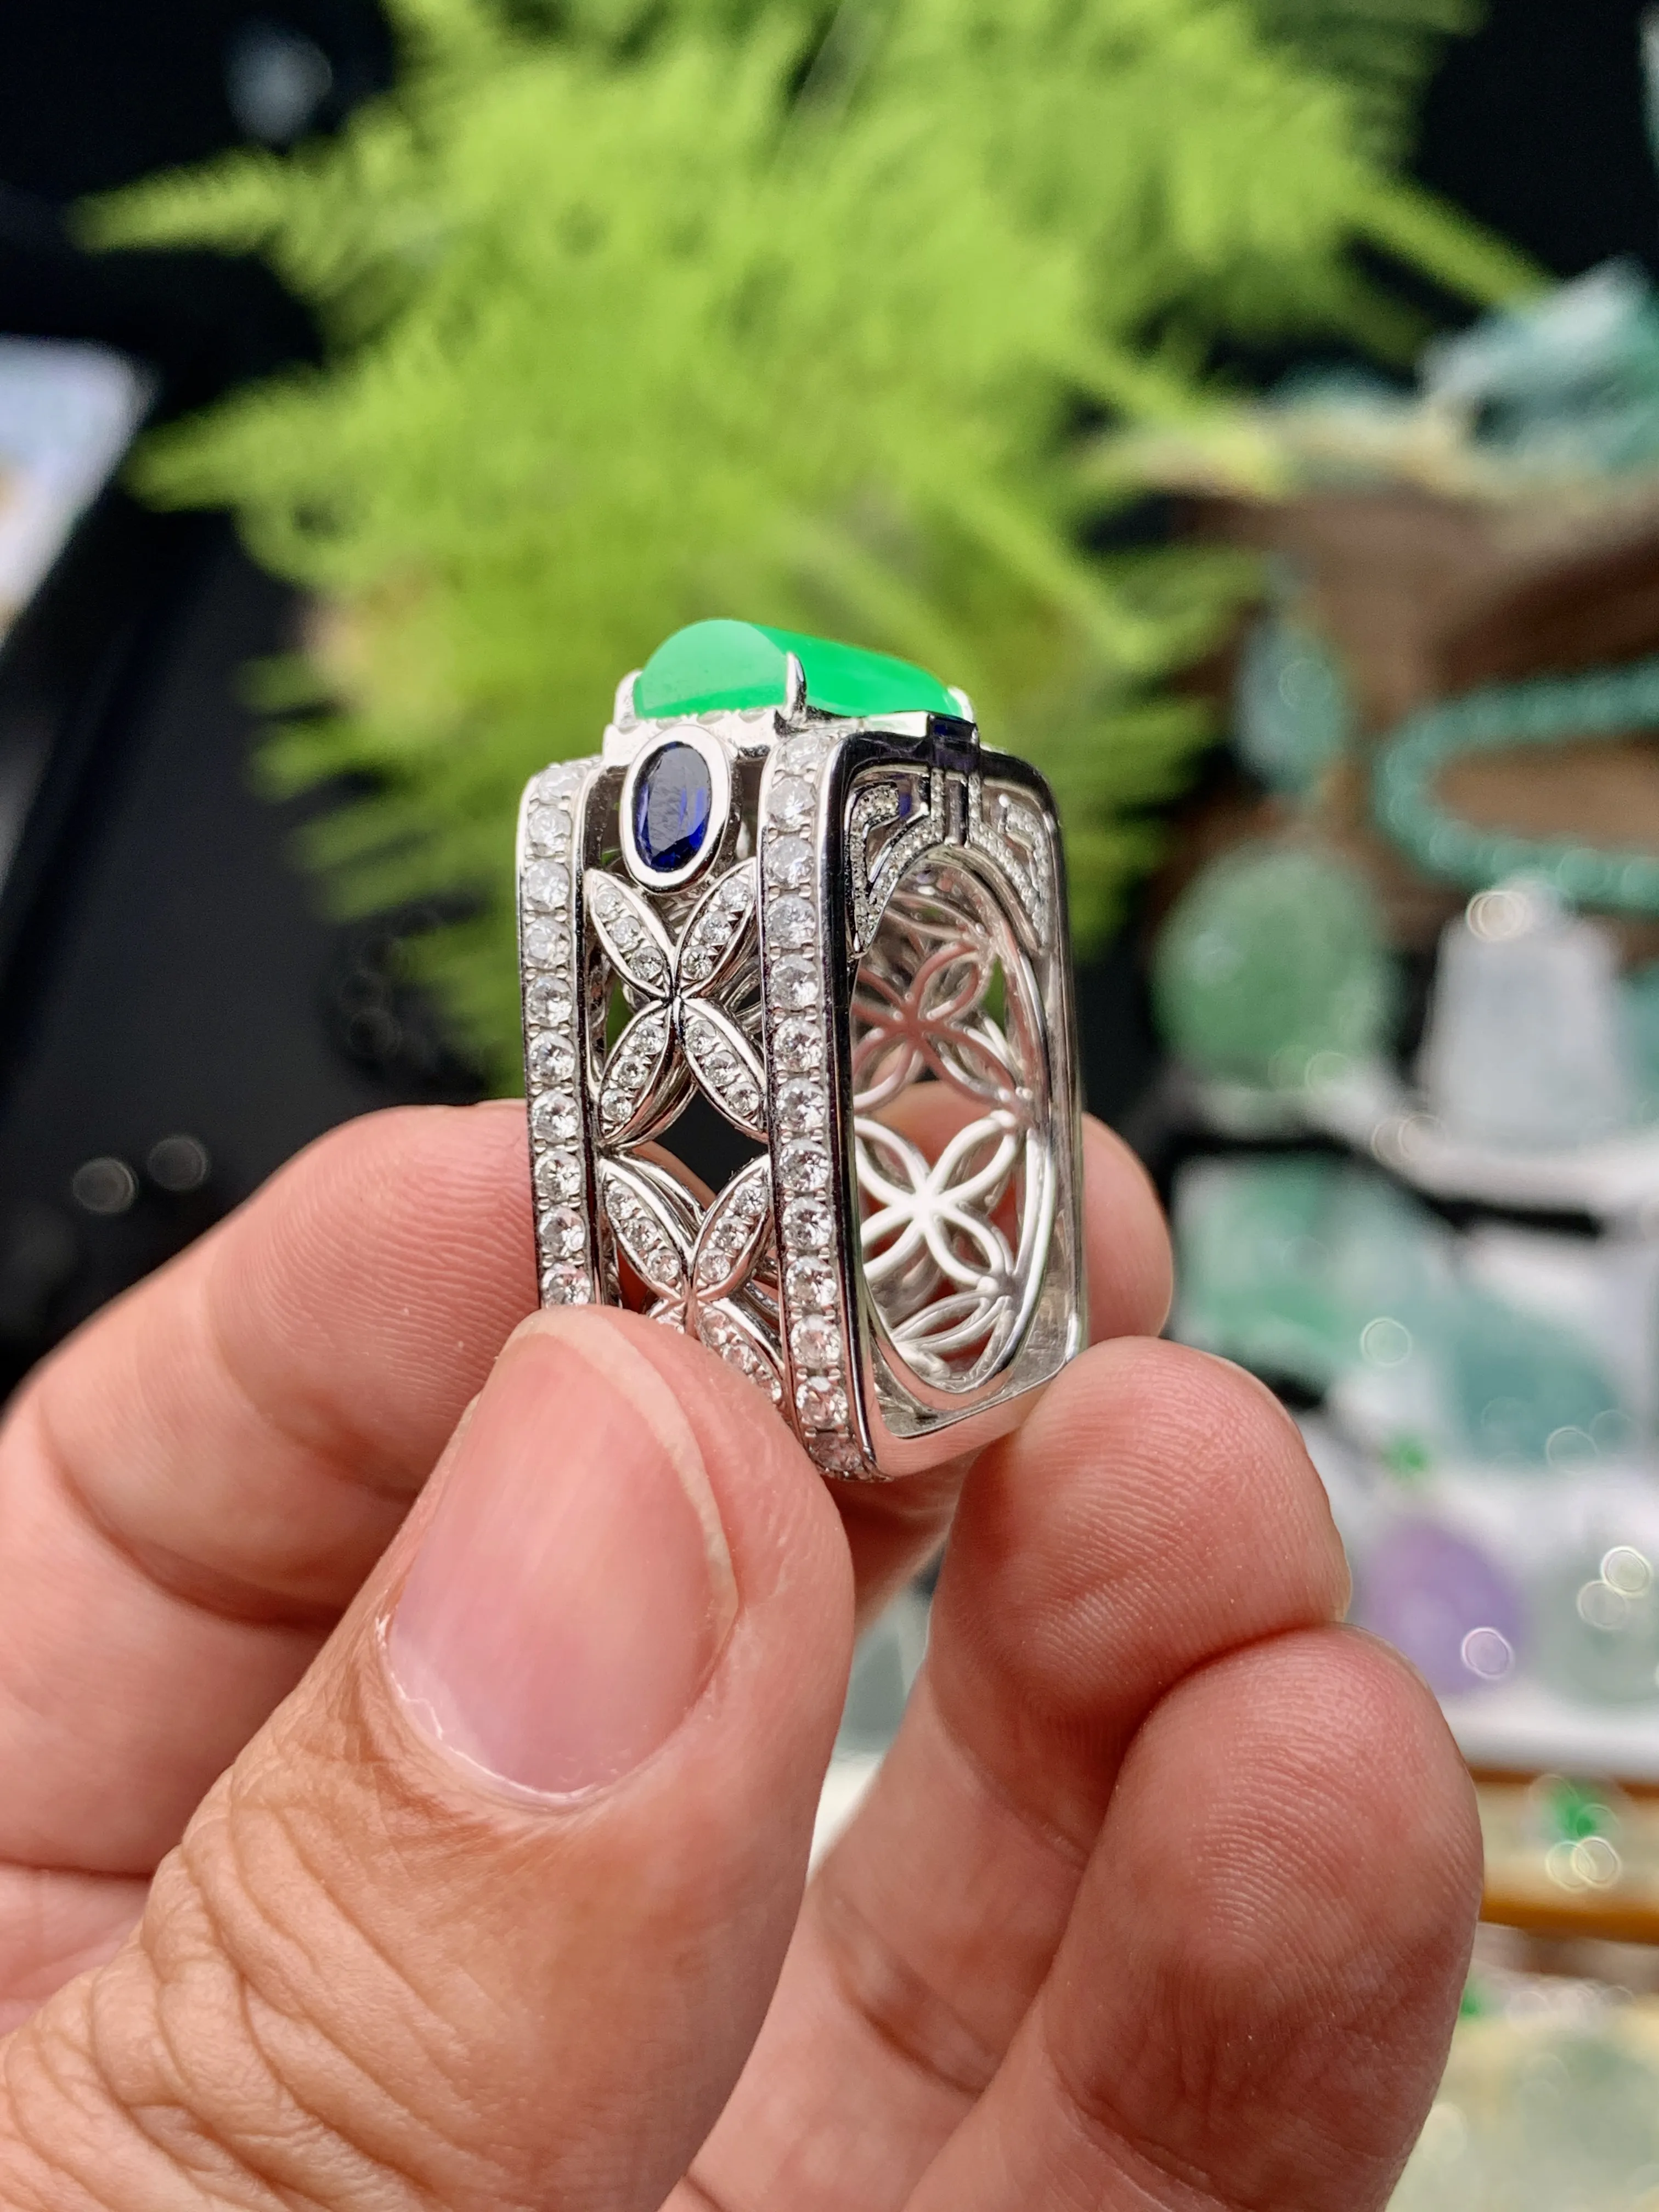 【档次】冰阳绿马鞍戒指，很霸气独特的款式，奢华镶嵌，种地优秀，上手手感很好。戒面上佳，冰阳动人，推荐入手。